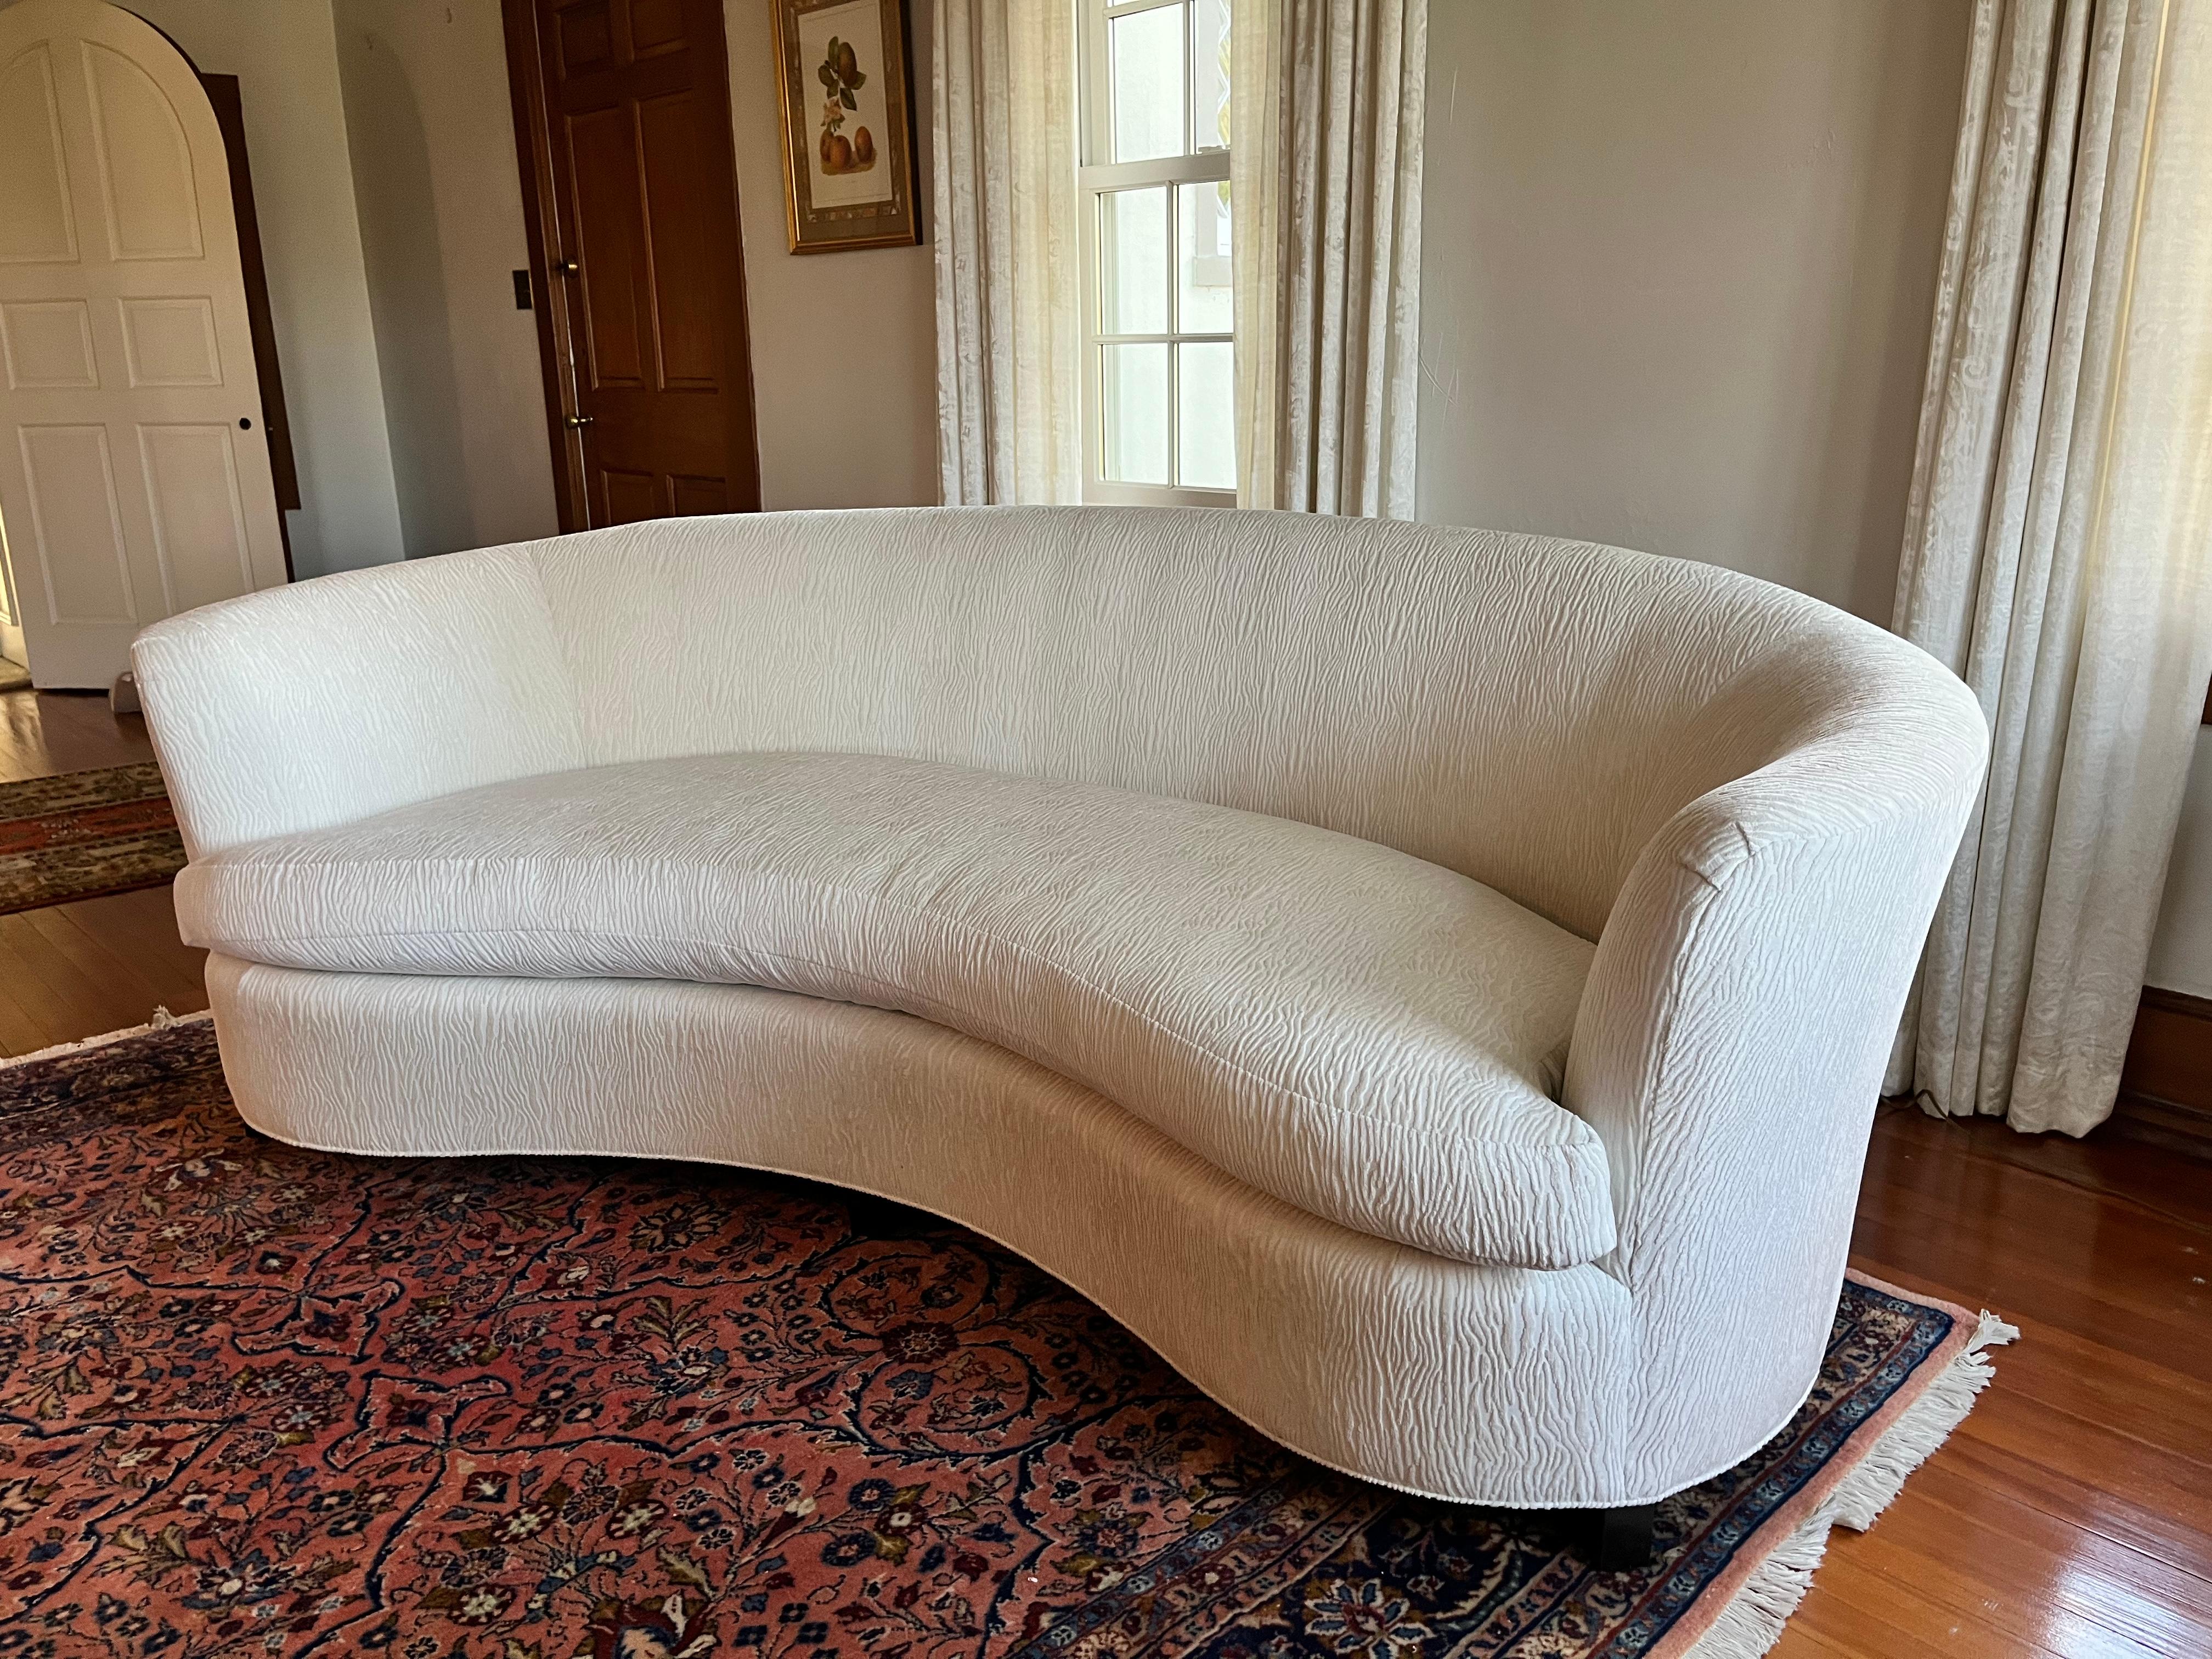 Le canapé Opera a un design symétrique et un sens du raffinement simple, comme les sièges traditionnels des galeries d'opéra. Il est doté d'un dossier serré et d'un coussin de banquette souple et confortable.  Récemment retapissé dans une chenille